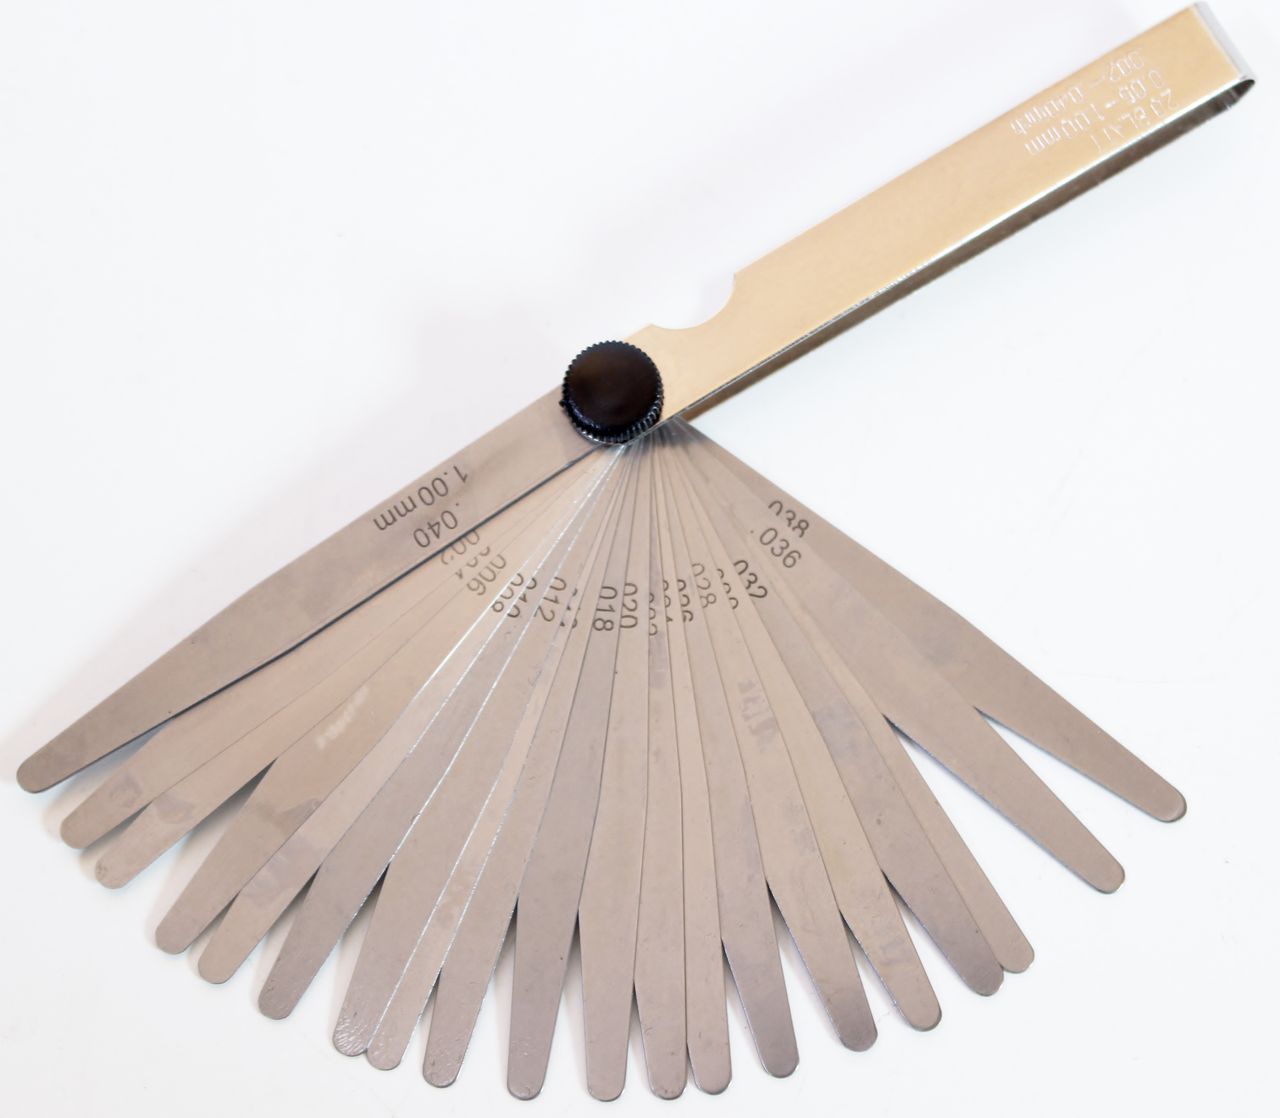 Fühlerlehre Abstandslehre Fächerspion Mess-Werkzeug 20 Blatt 0,05-1,00mm DIN2275